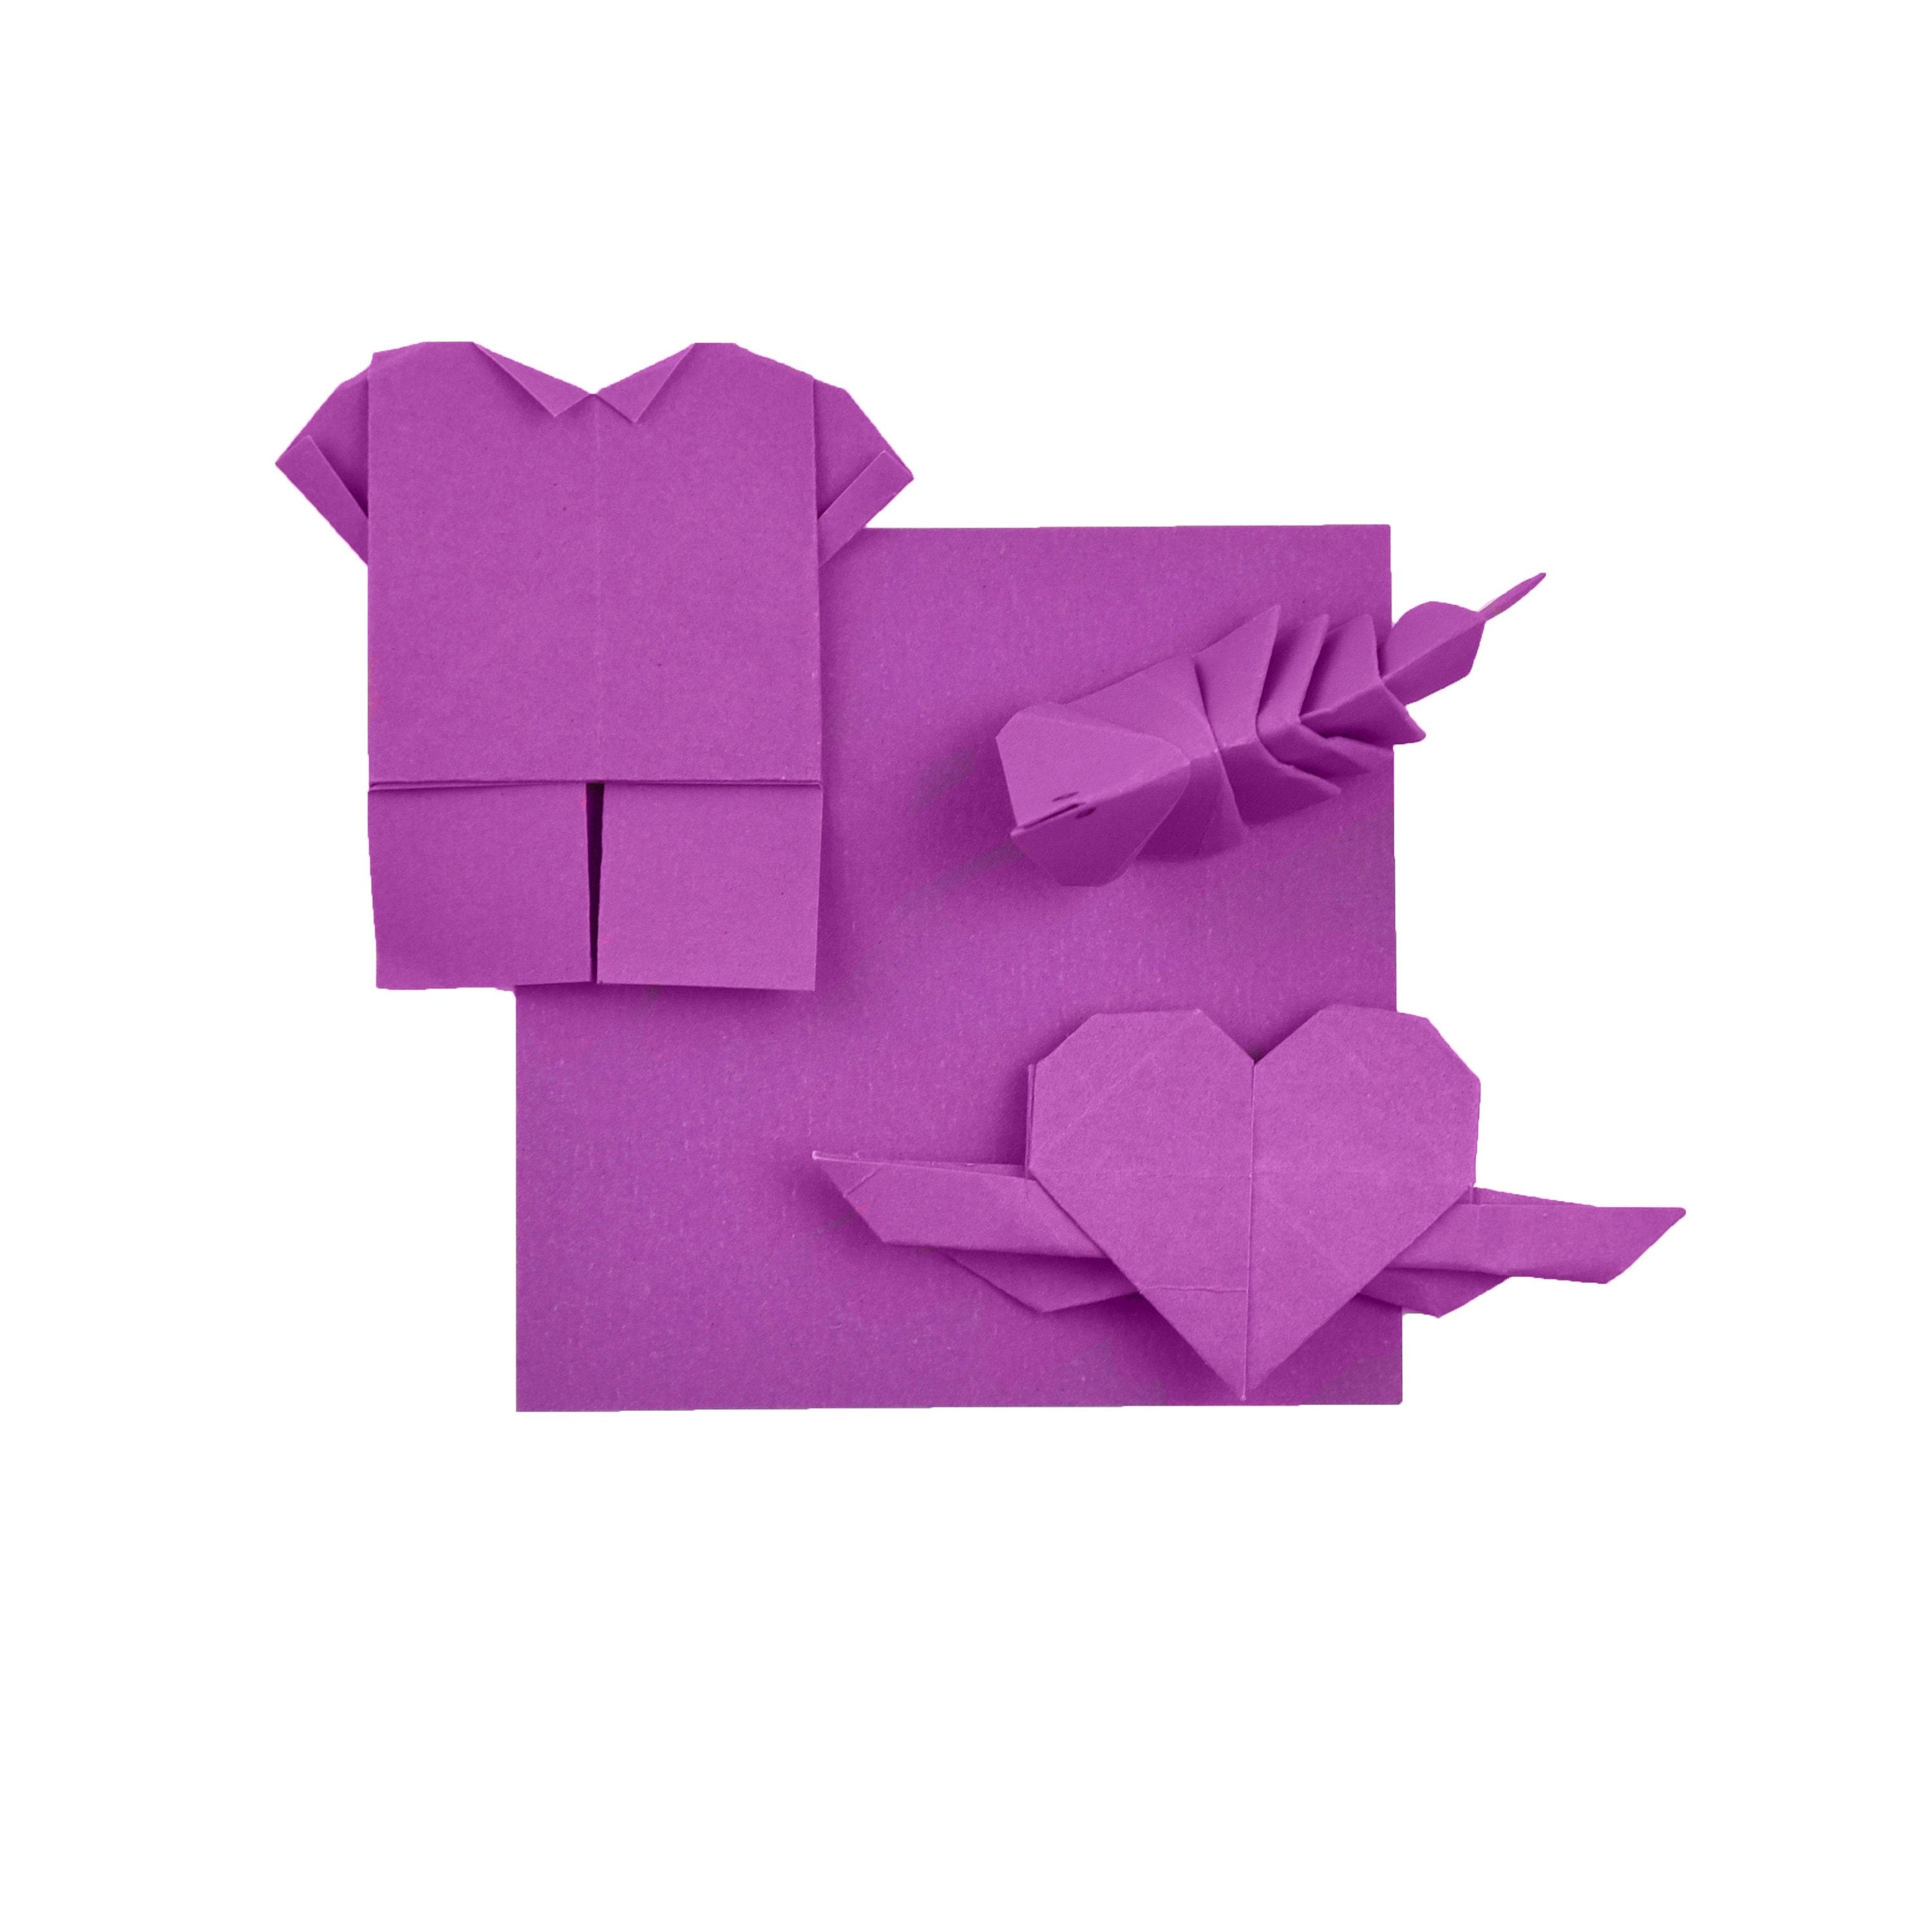 100 Hojas de Papel Origami - 3x3 pulgadas - Paquete de Papel Cuadrado para Plegar, Grullas de Origami y Decoración - S08